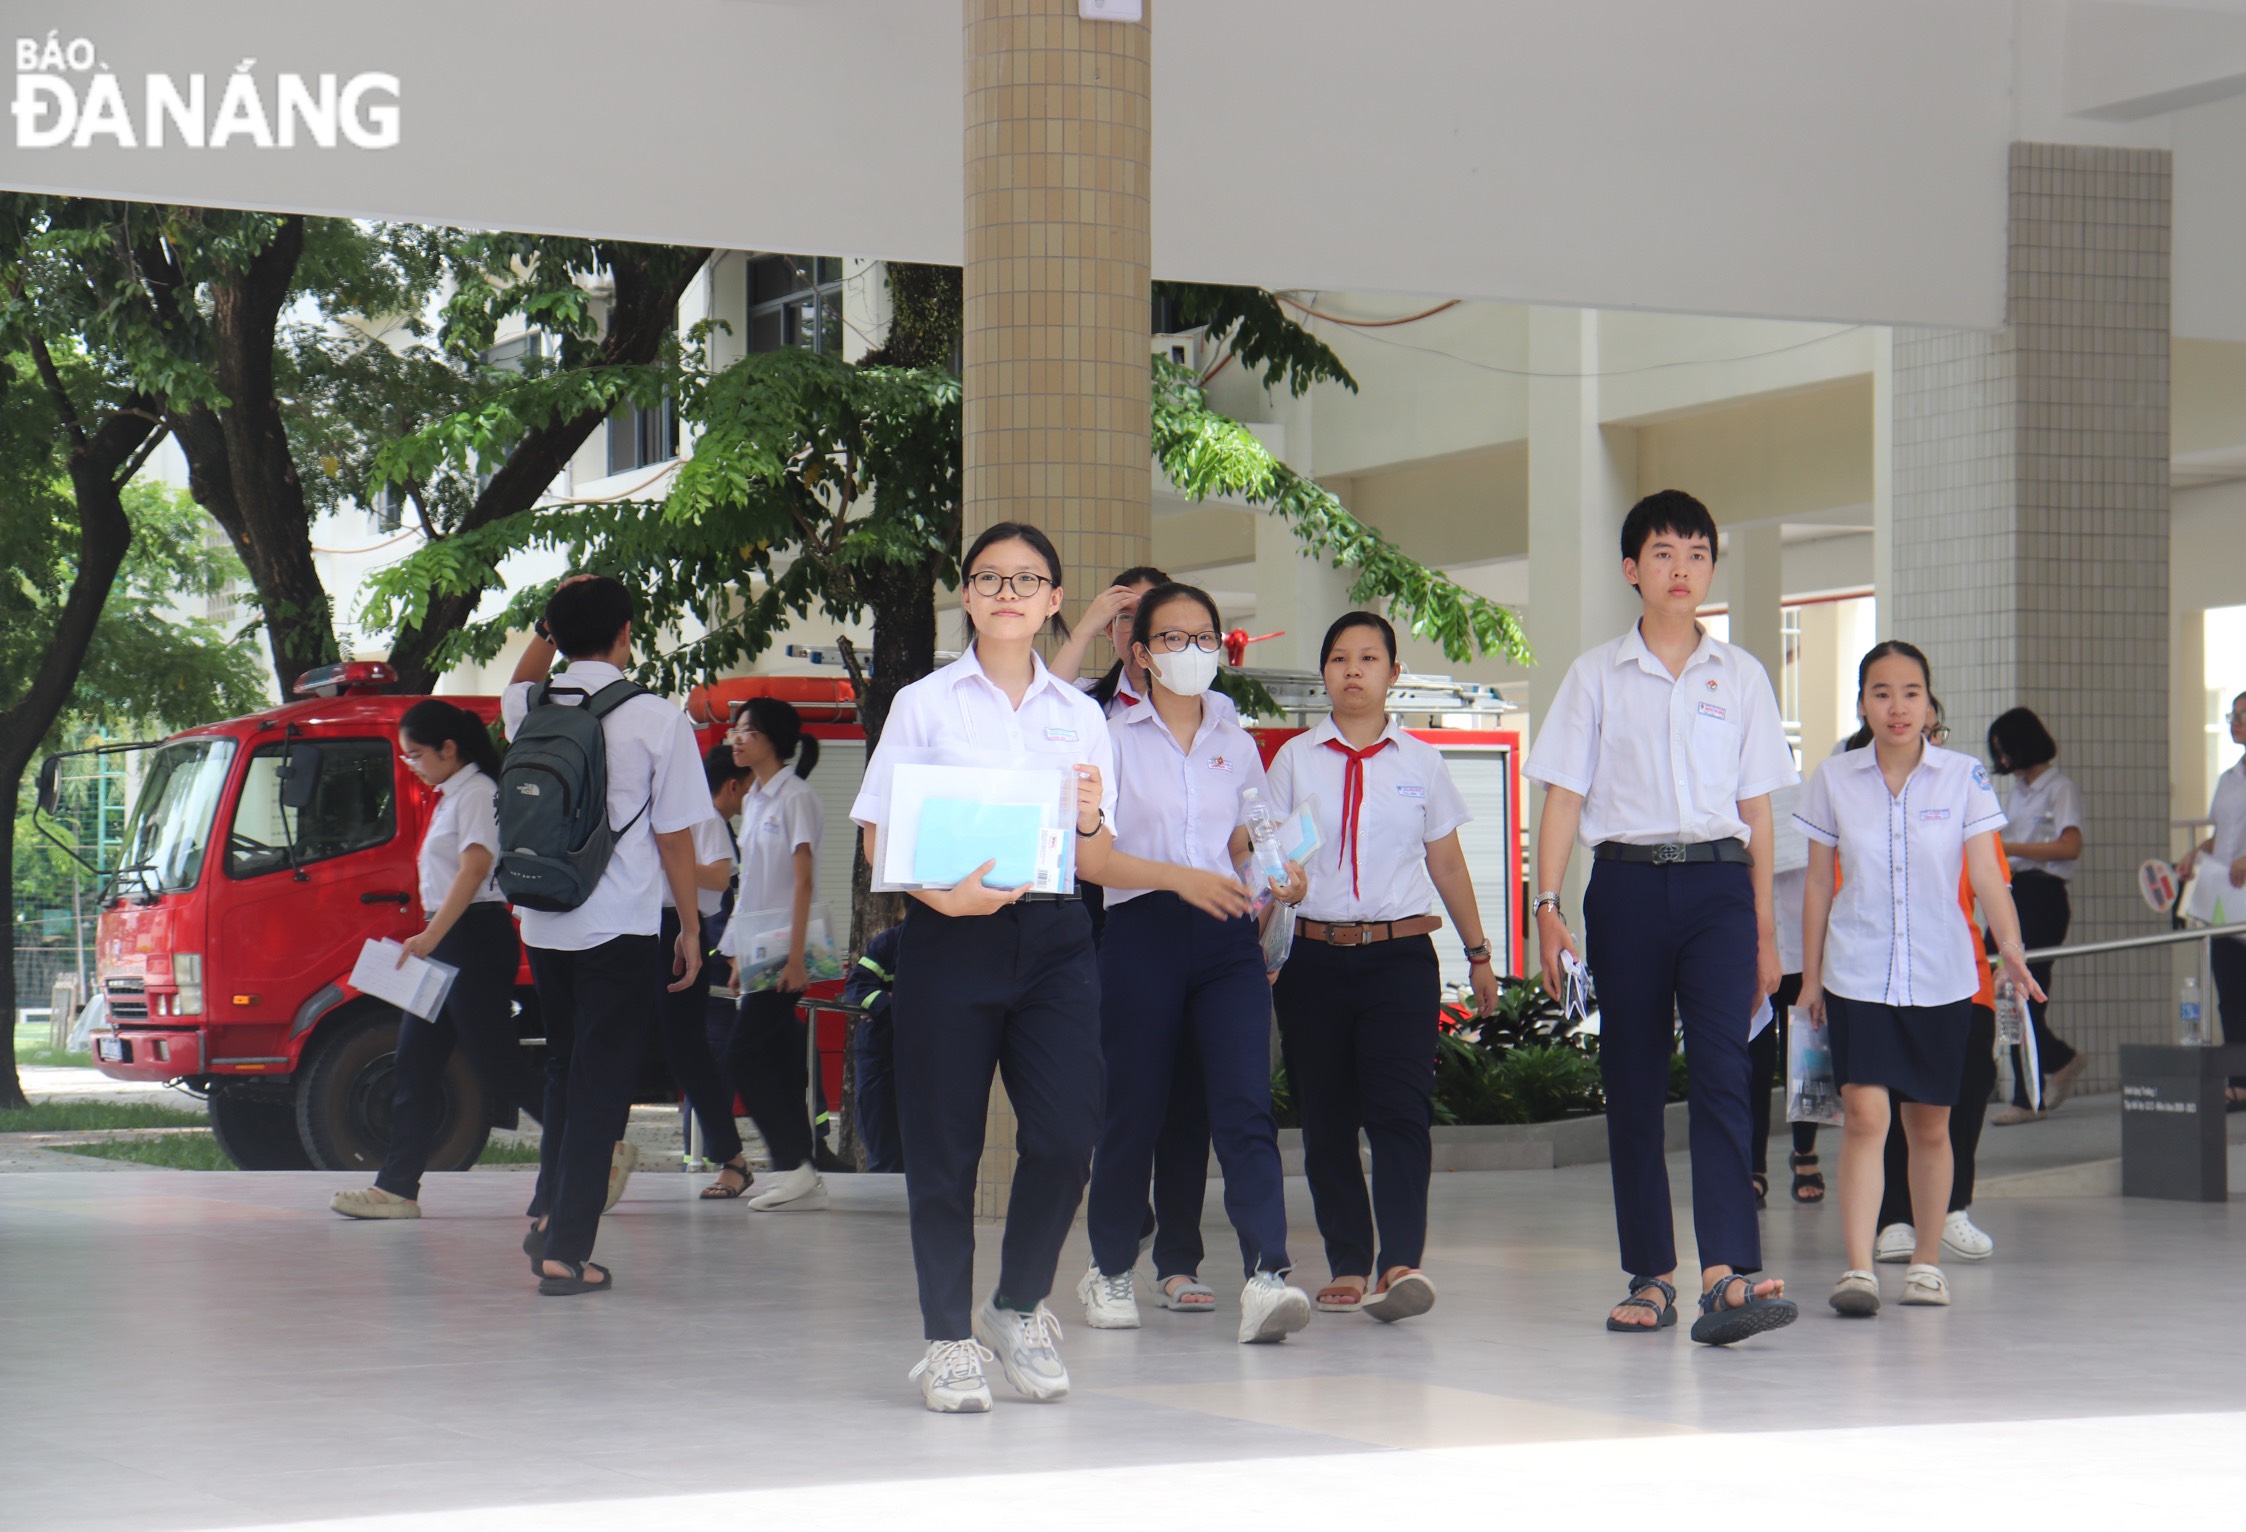 Chiều ngày 4-6, thí sinh thi môn chuyên, thời gian làm bài 150 phút, dành cho thí sinh đăng ký vào Trường THPT chuyên Lê Quý Đôn.